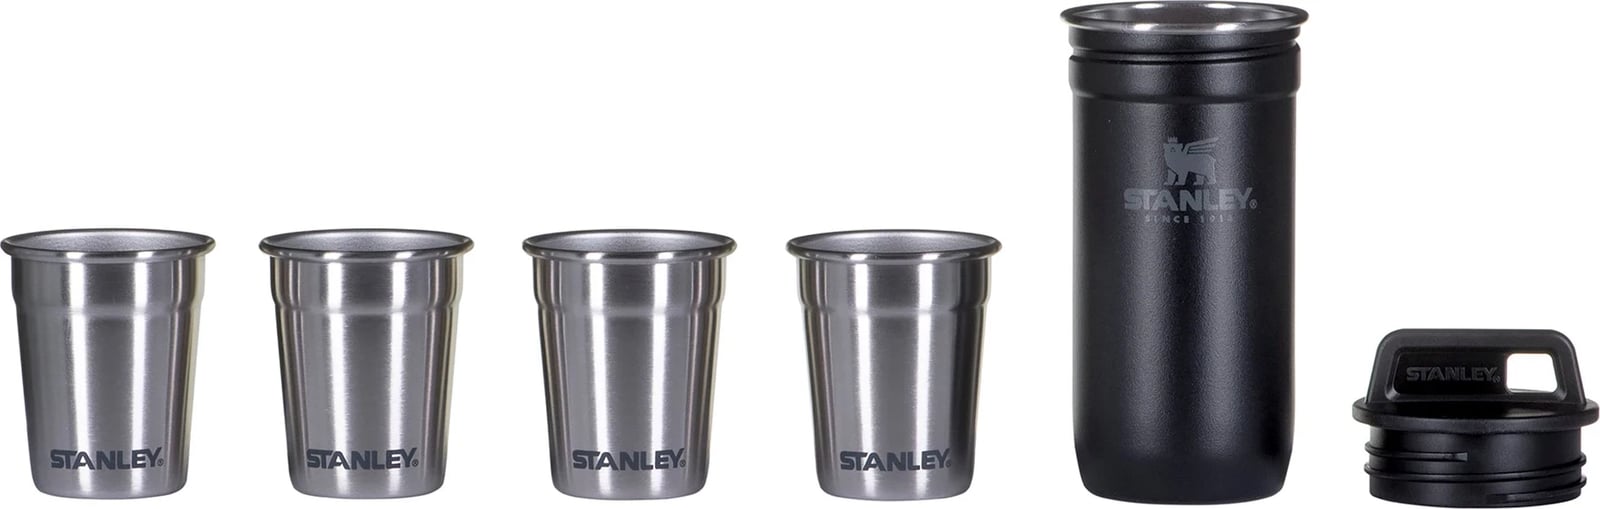 Gota metalike Stanley për Aventura, ngjyrë e zezë matte, 4 x 60 ml